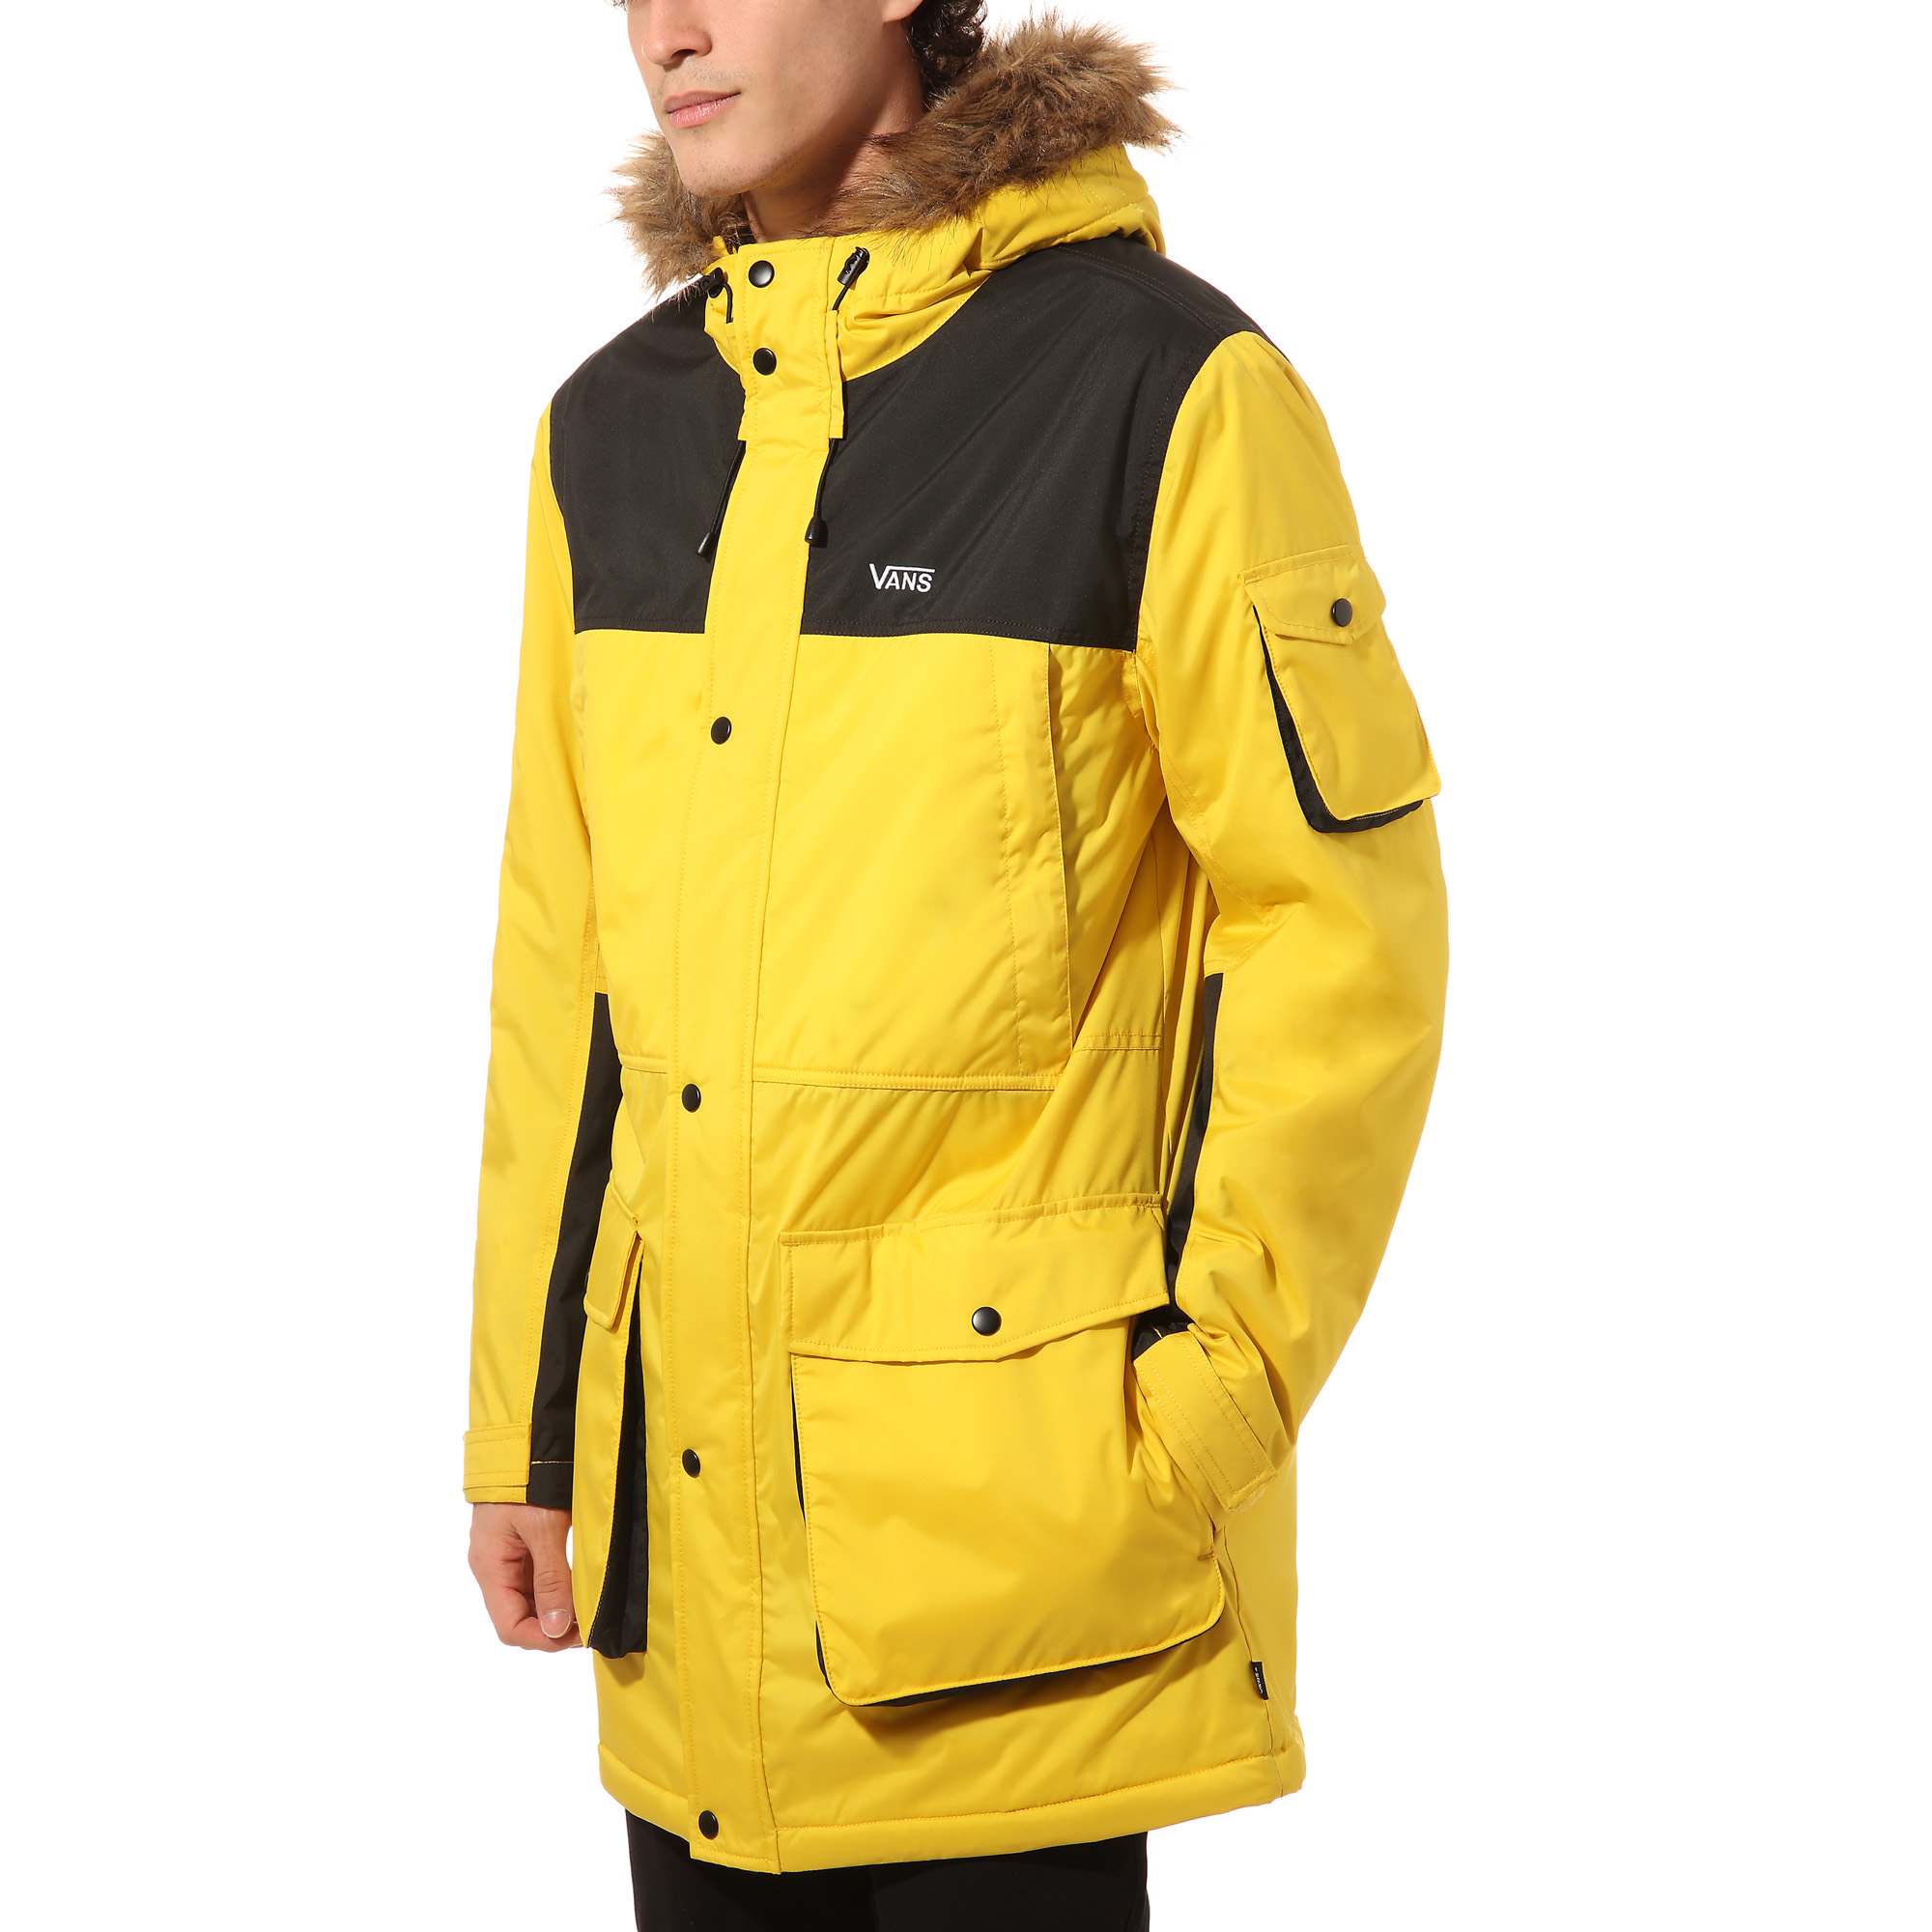 Крокус мужчина в желтой куртке. Куртка vans Recco. Куртка Ванс мужская зимняя. Куртка Ванс желтая. Ванс куртка парка.